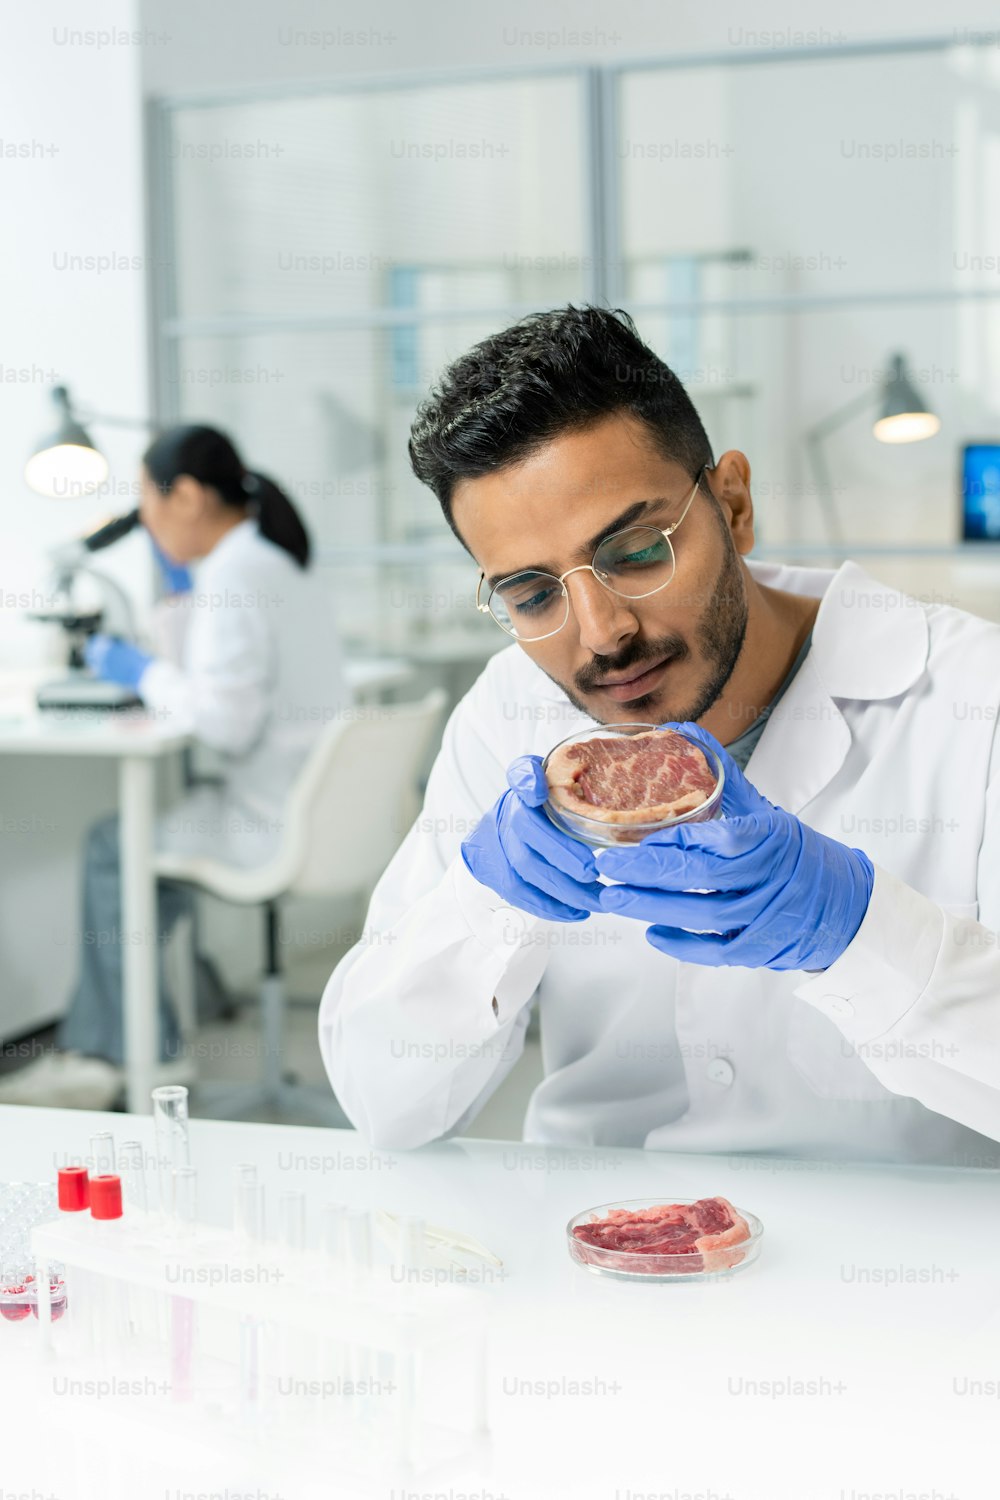 흰 코트를 입은 젊은 장갑을 낀 남성 연구원이 실험실에서 그 특성을 연구하면서 생 야채 고기 조각으로 페트리 접시를 들고 있습니다.